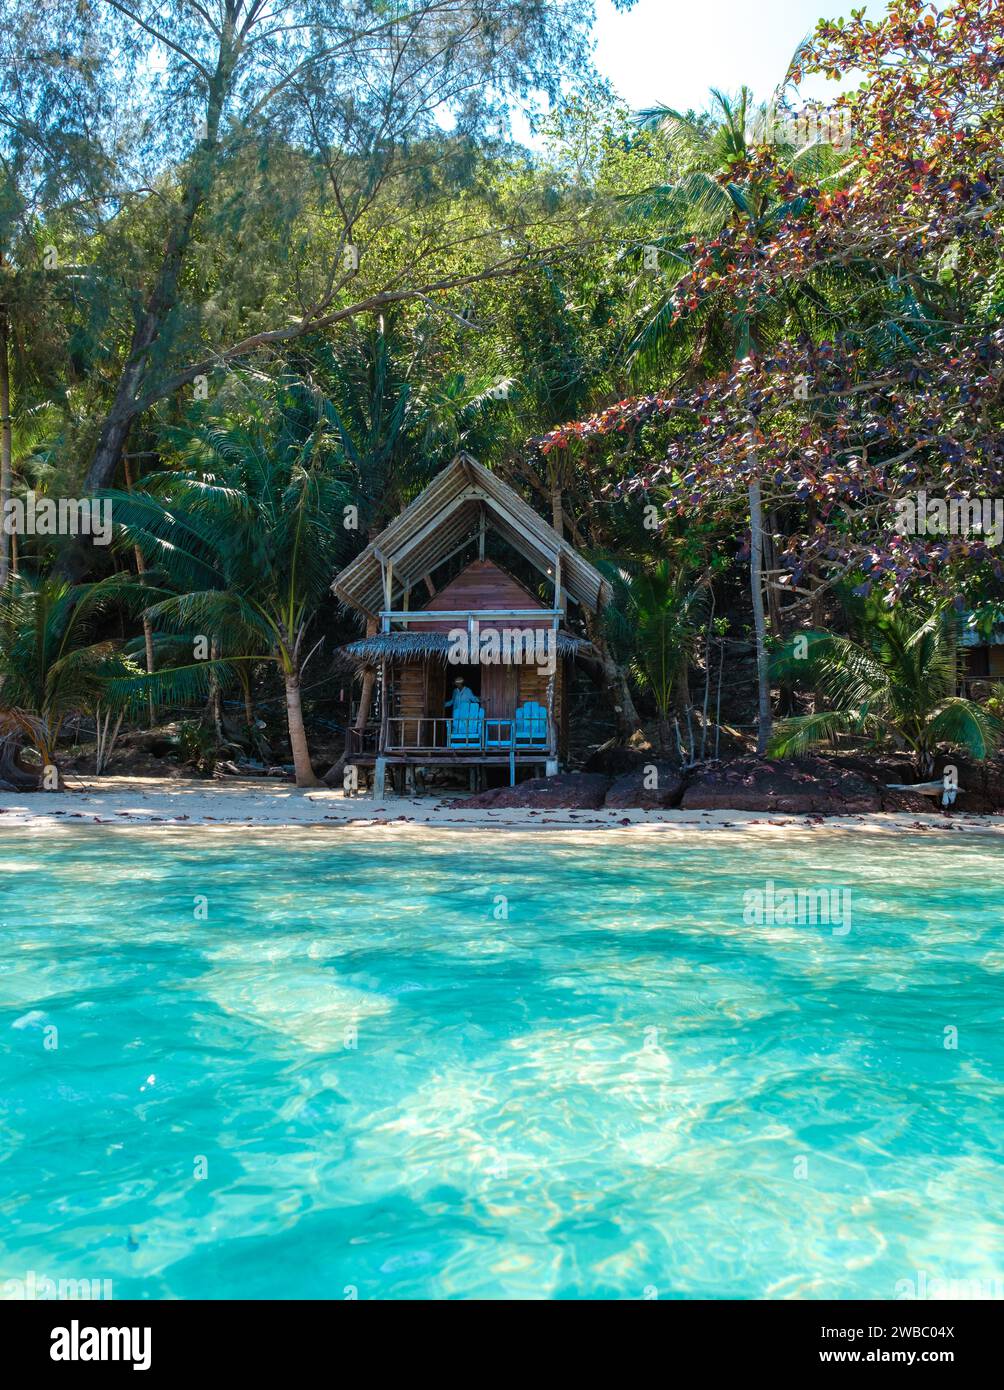 Koh Wai Island trat Thailand ist eine winzige tropische Insel in der Nähe von Koh Chang. Holzbungalow Bambus Hütte am Strand an einem sonnigen Tag Stockfoto